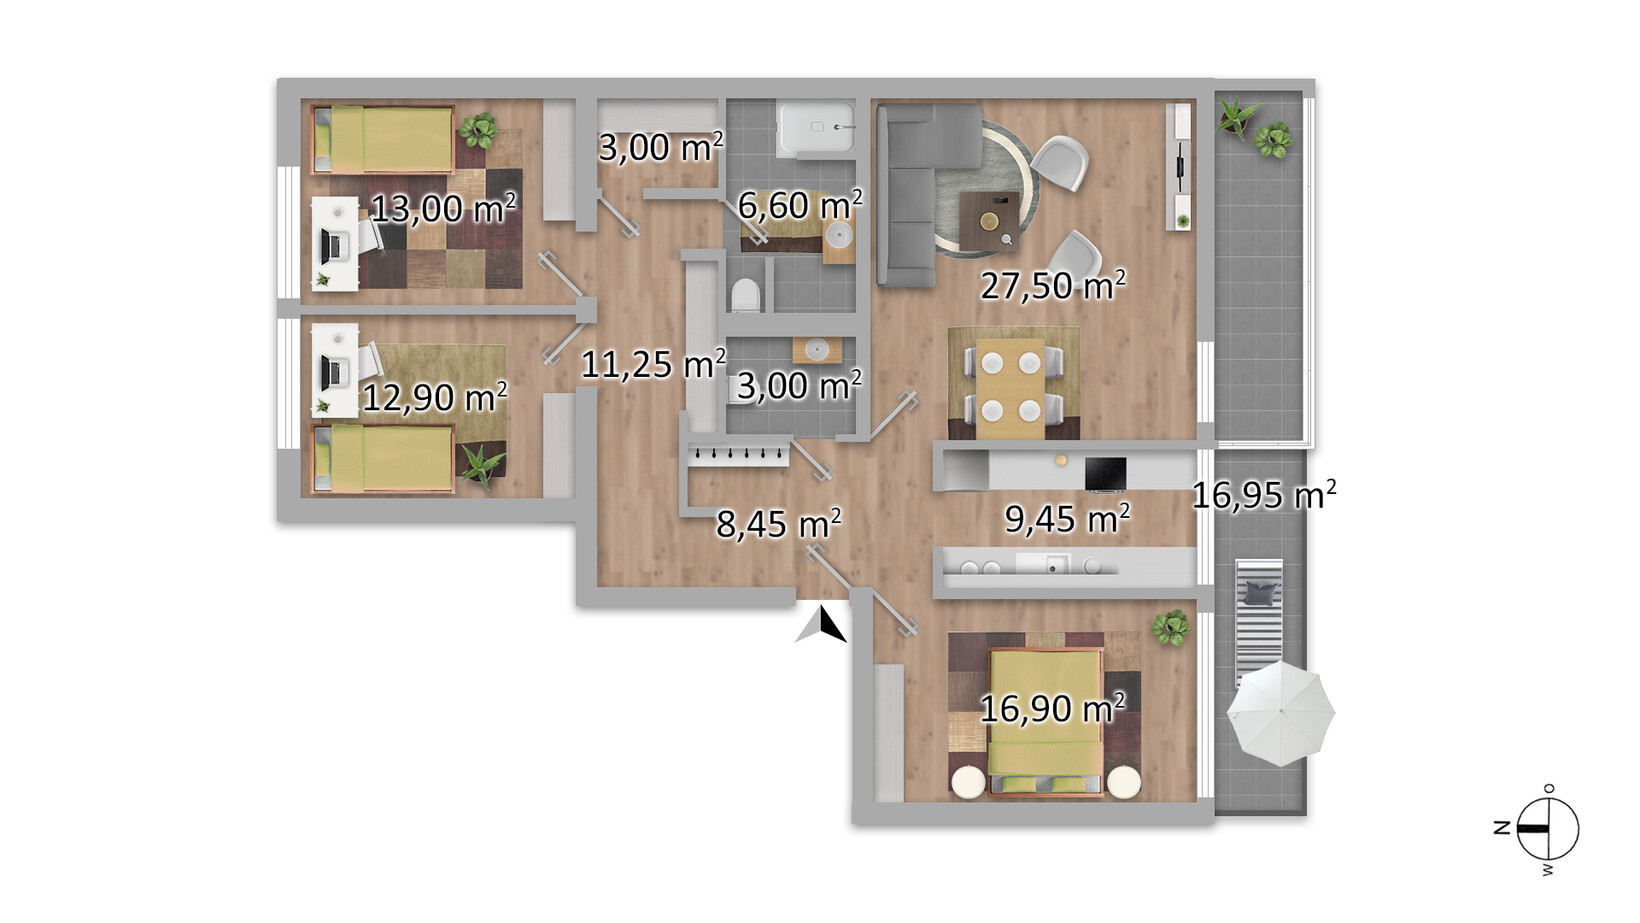 Traumhafte 4-Zimmerwohnung in Toplage - Jenewein Immobilienmanagement